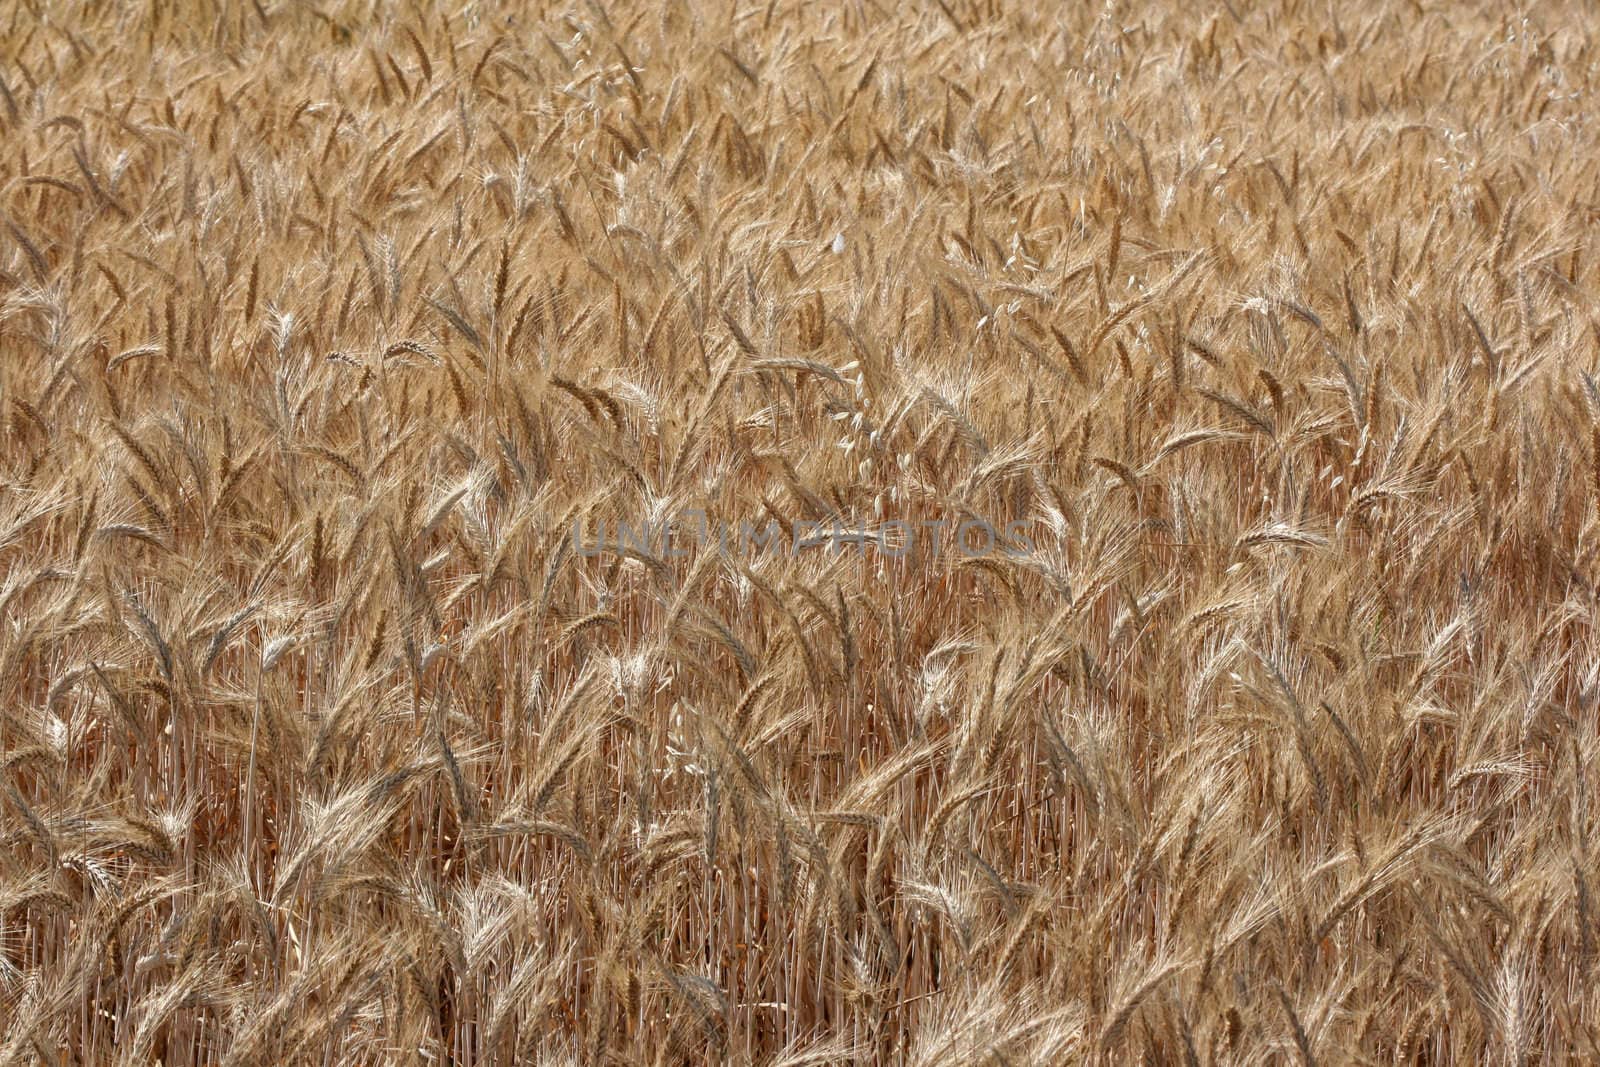 Wheatfields under a golden sun